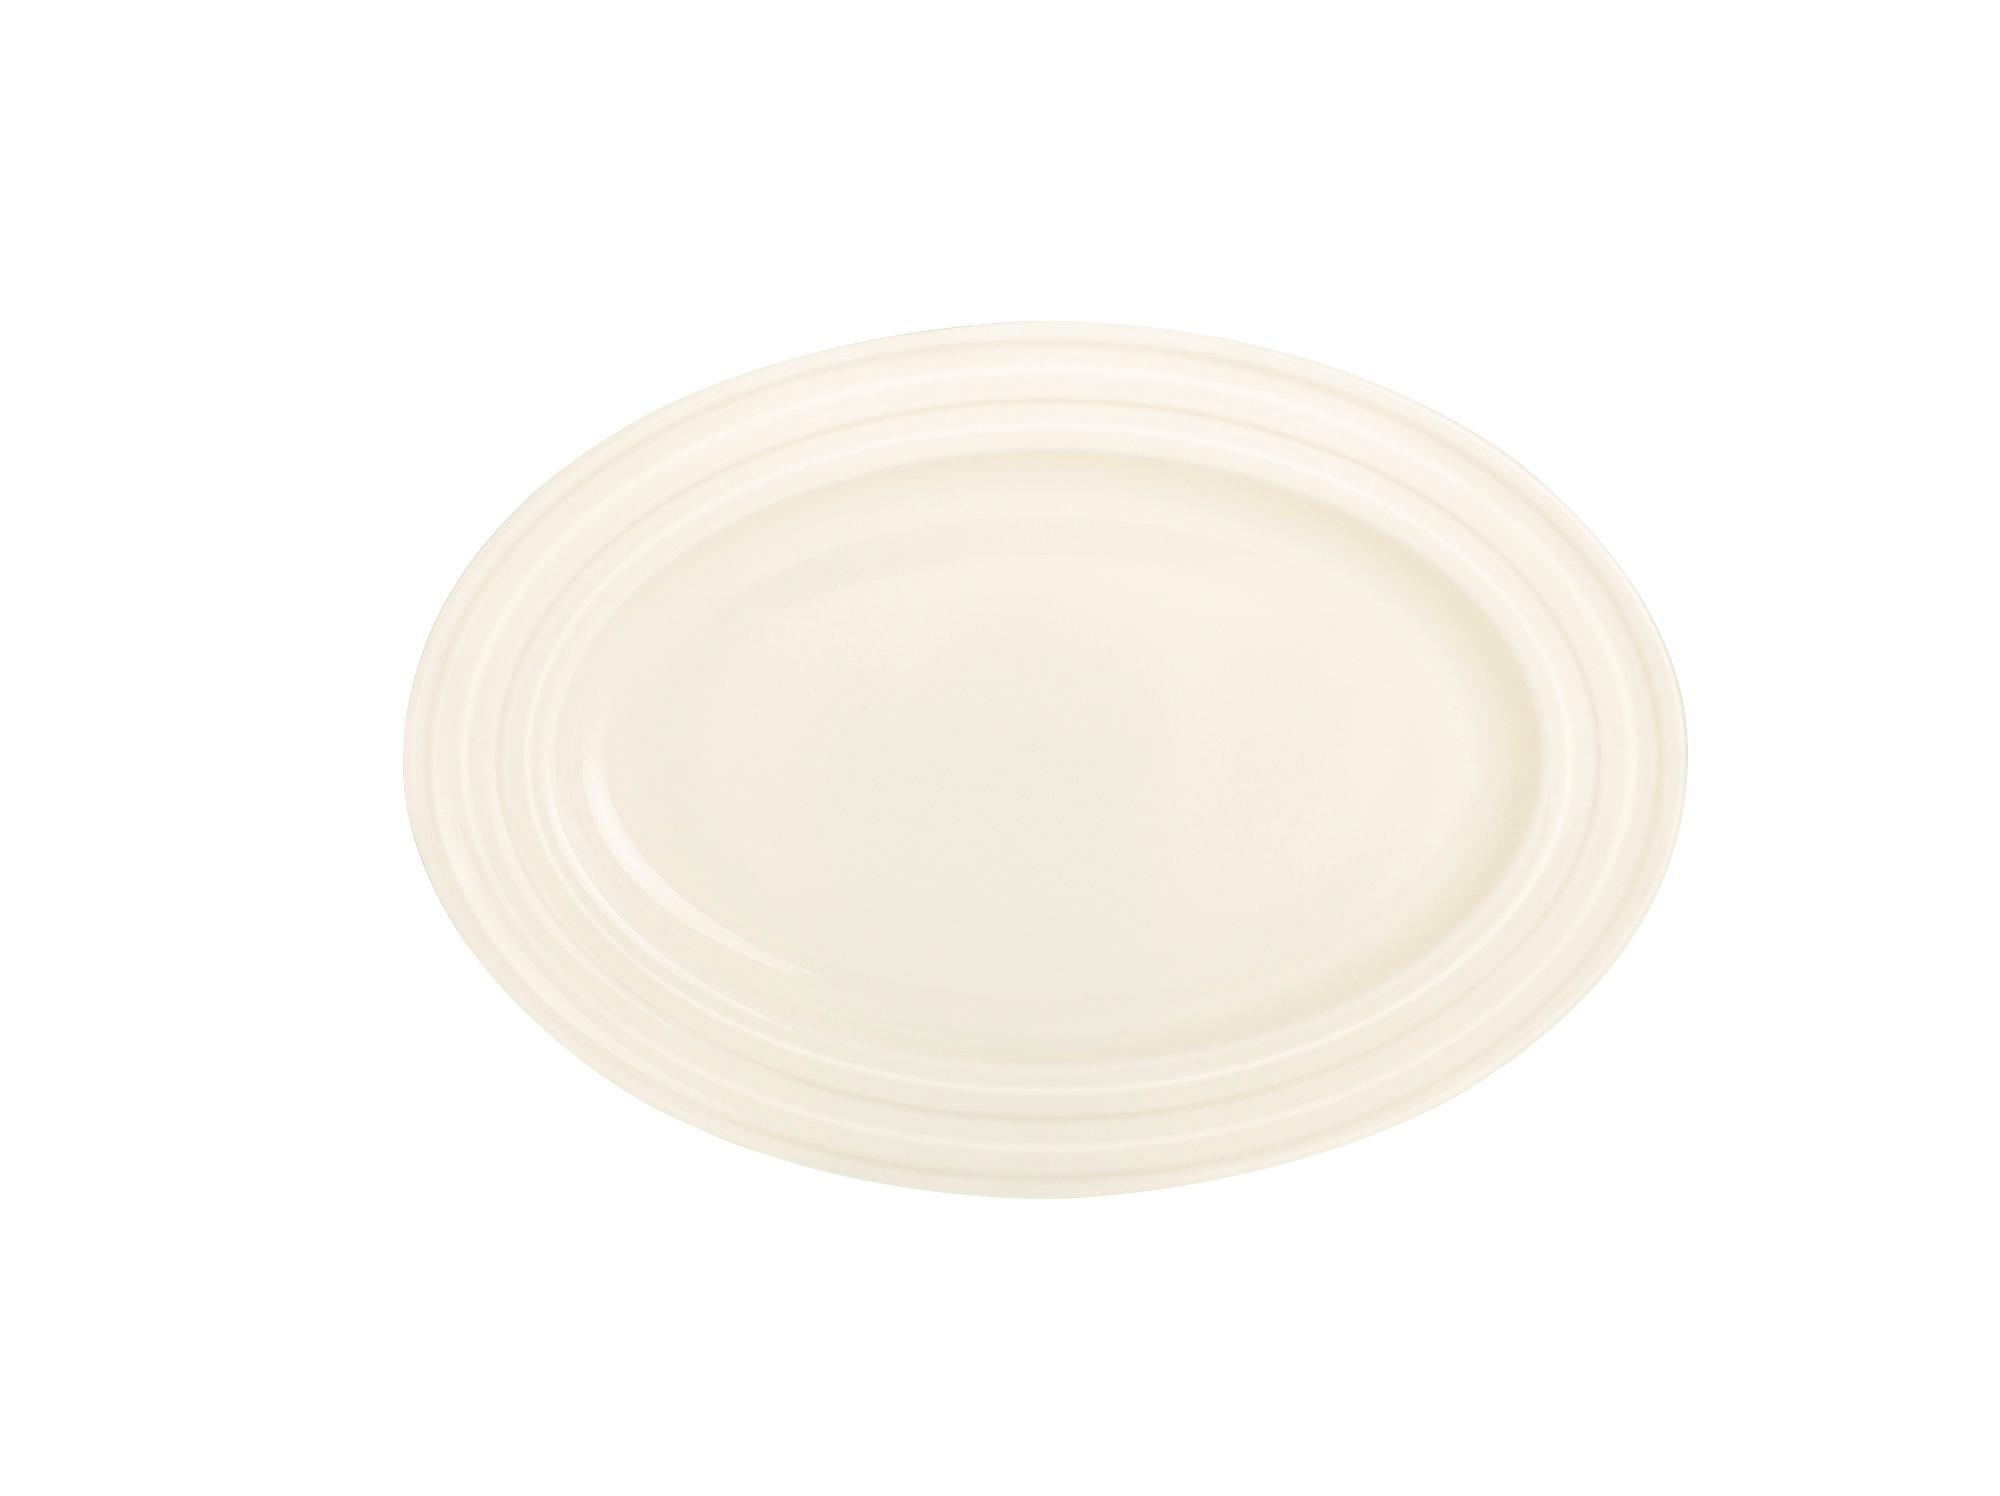 Perla oval dish, 340x240mm